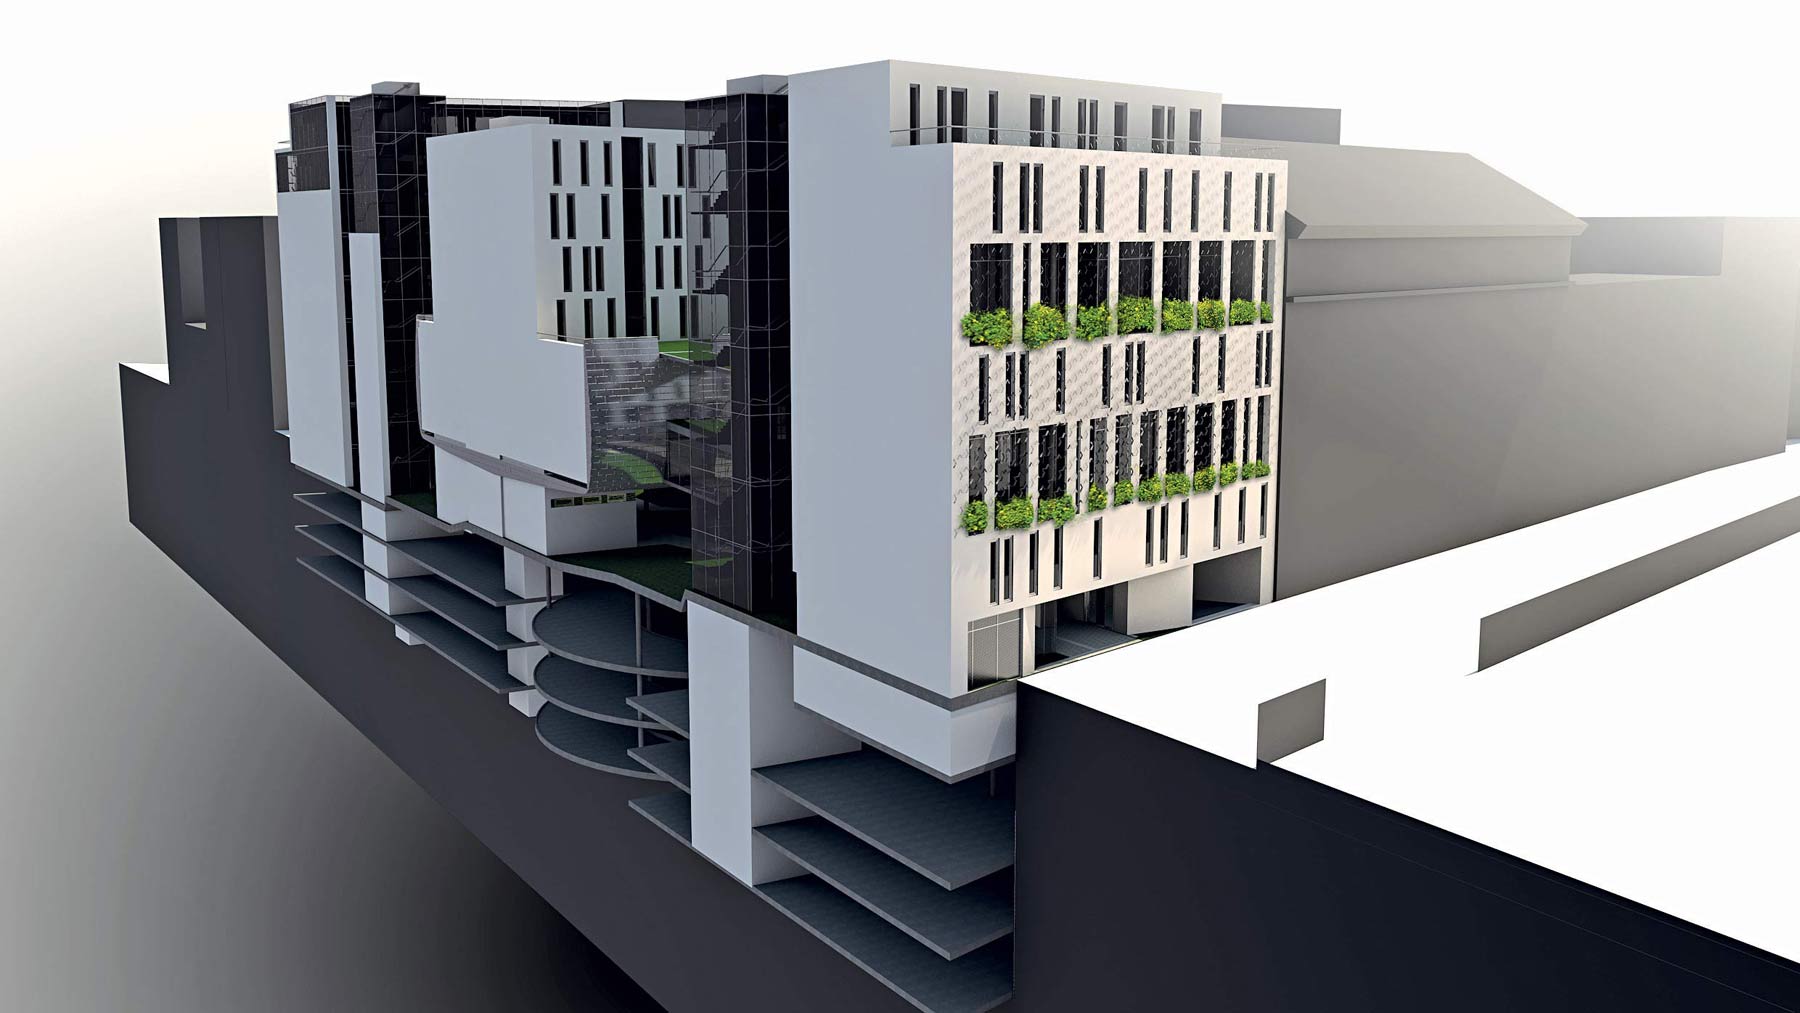 Rozloženie jednotlivých blokov v prieluke s detailom fasády študentského centra z Banskobystrickej ulice